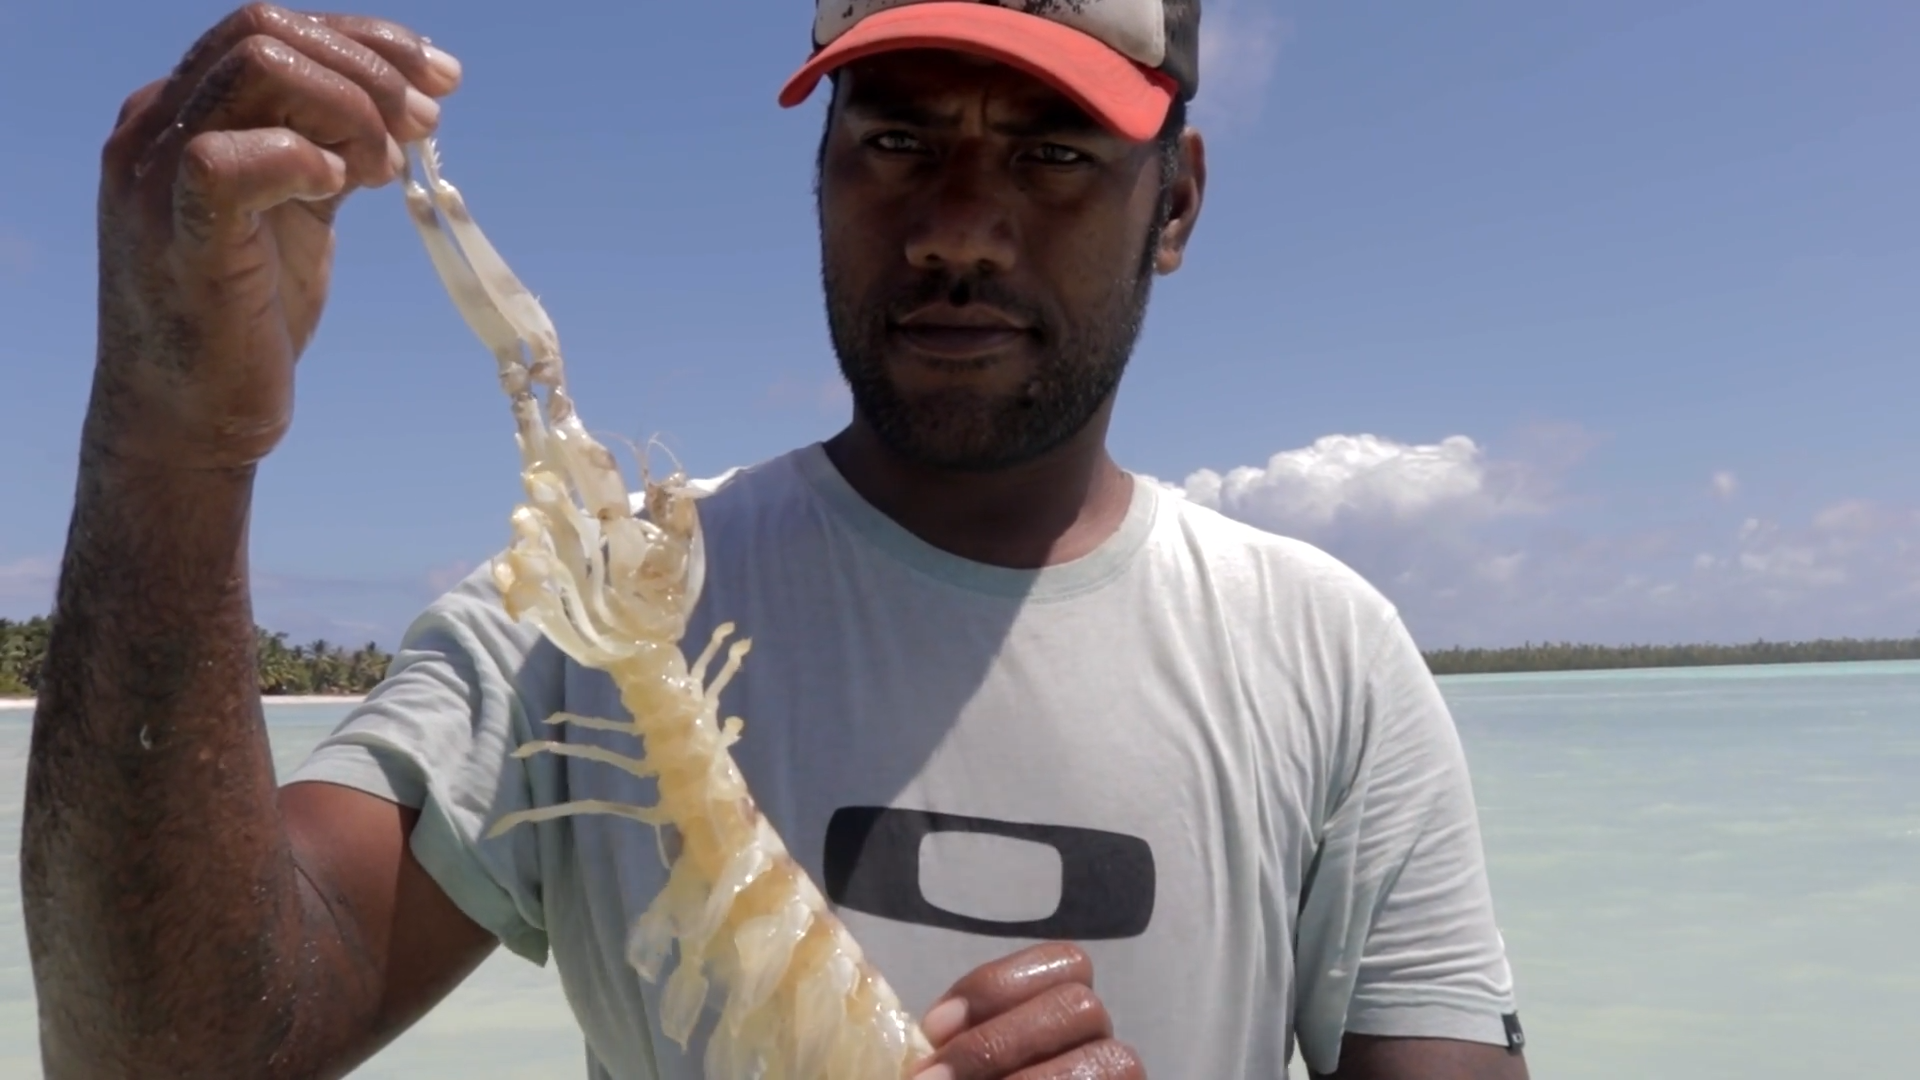 Mantis shrimp fishing in Kiribati